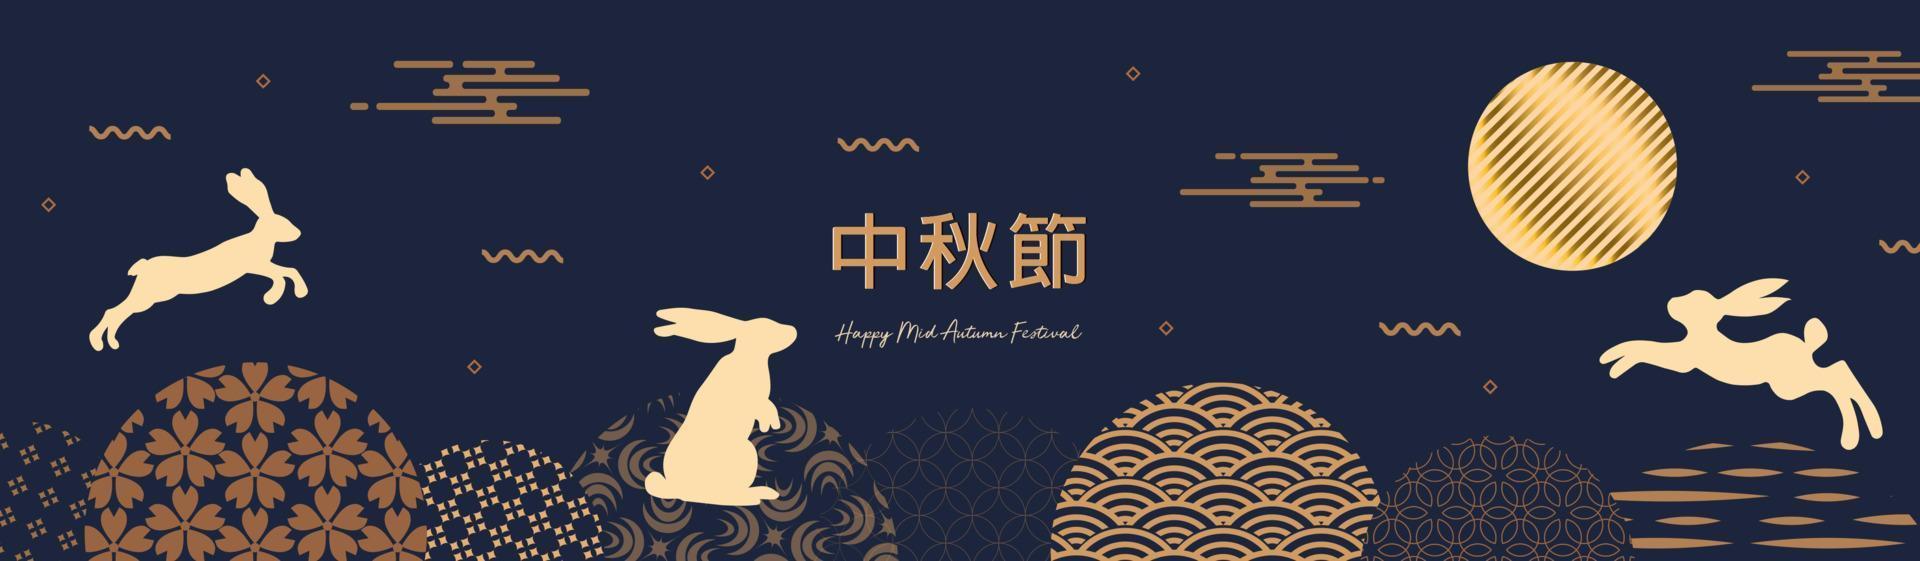 diseño de pancartas con círculos tradicionales chinos de luna llena, saltando liebres bajo la luna. traducción del chino - festival del medio otoño. ilustración vectorial vector